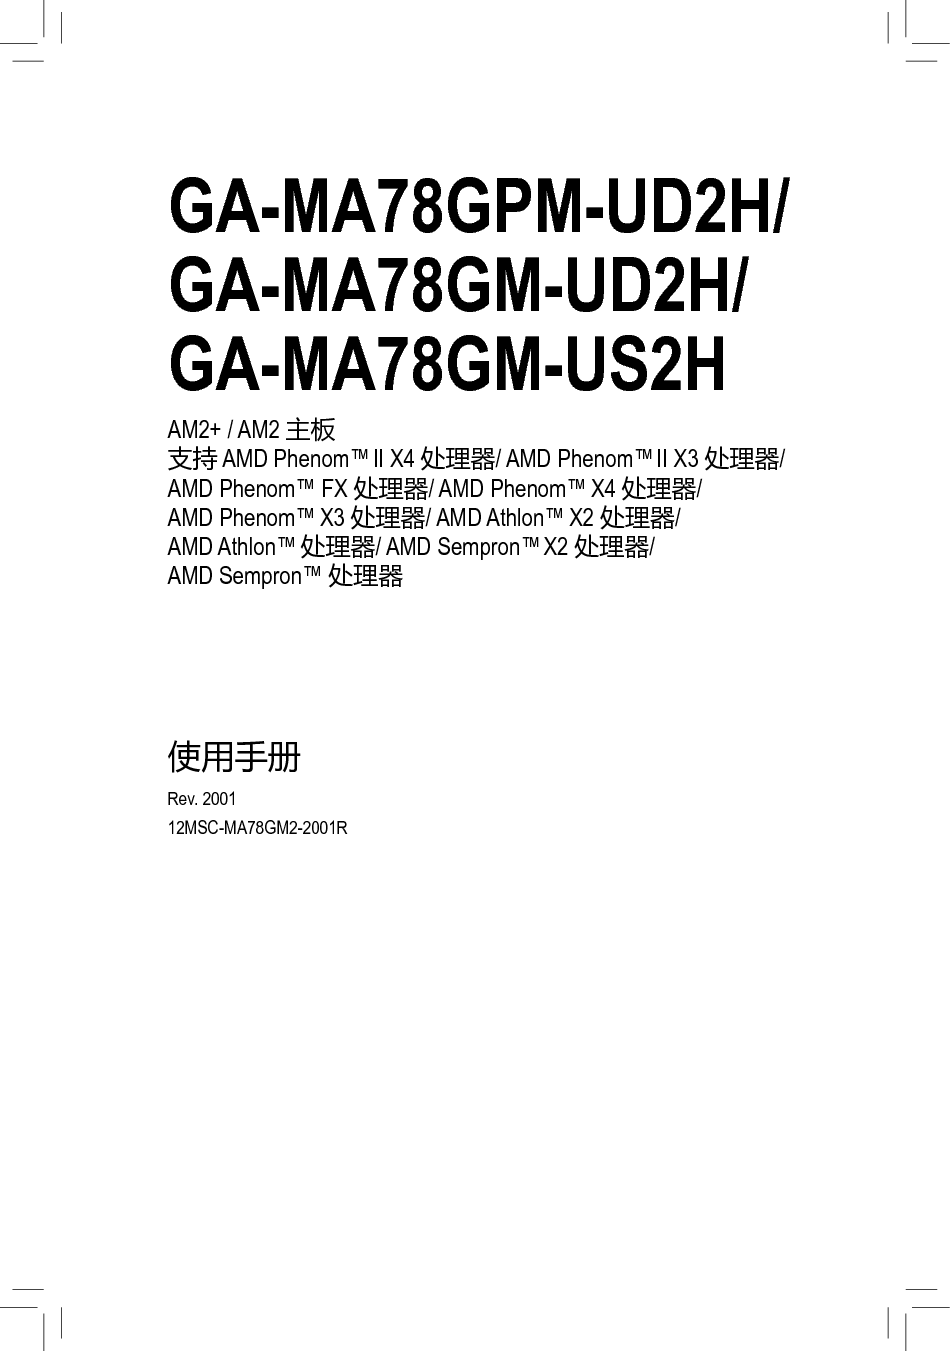 技嘉 Gigabyte GA-MA78GPM-UD2H 使用手册 封面